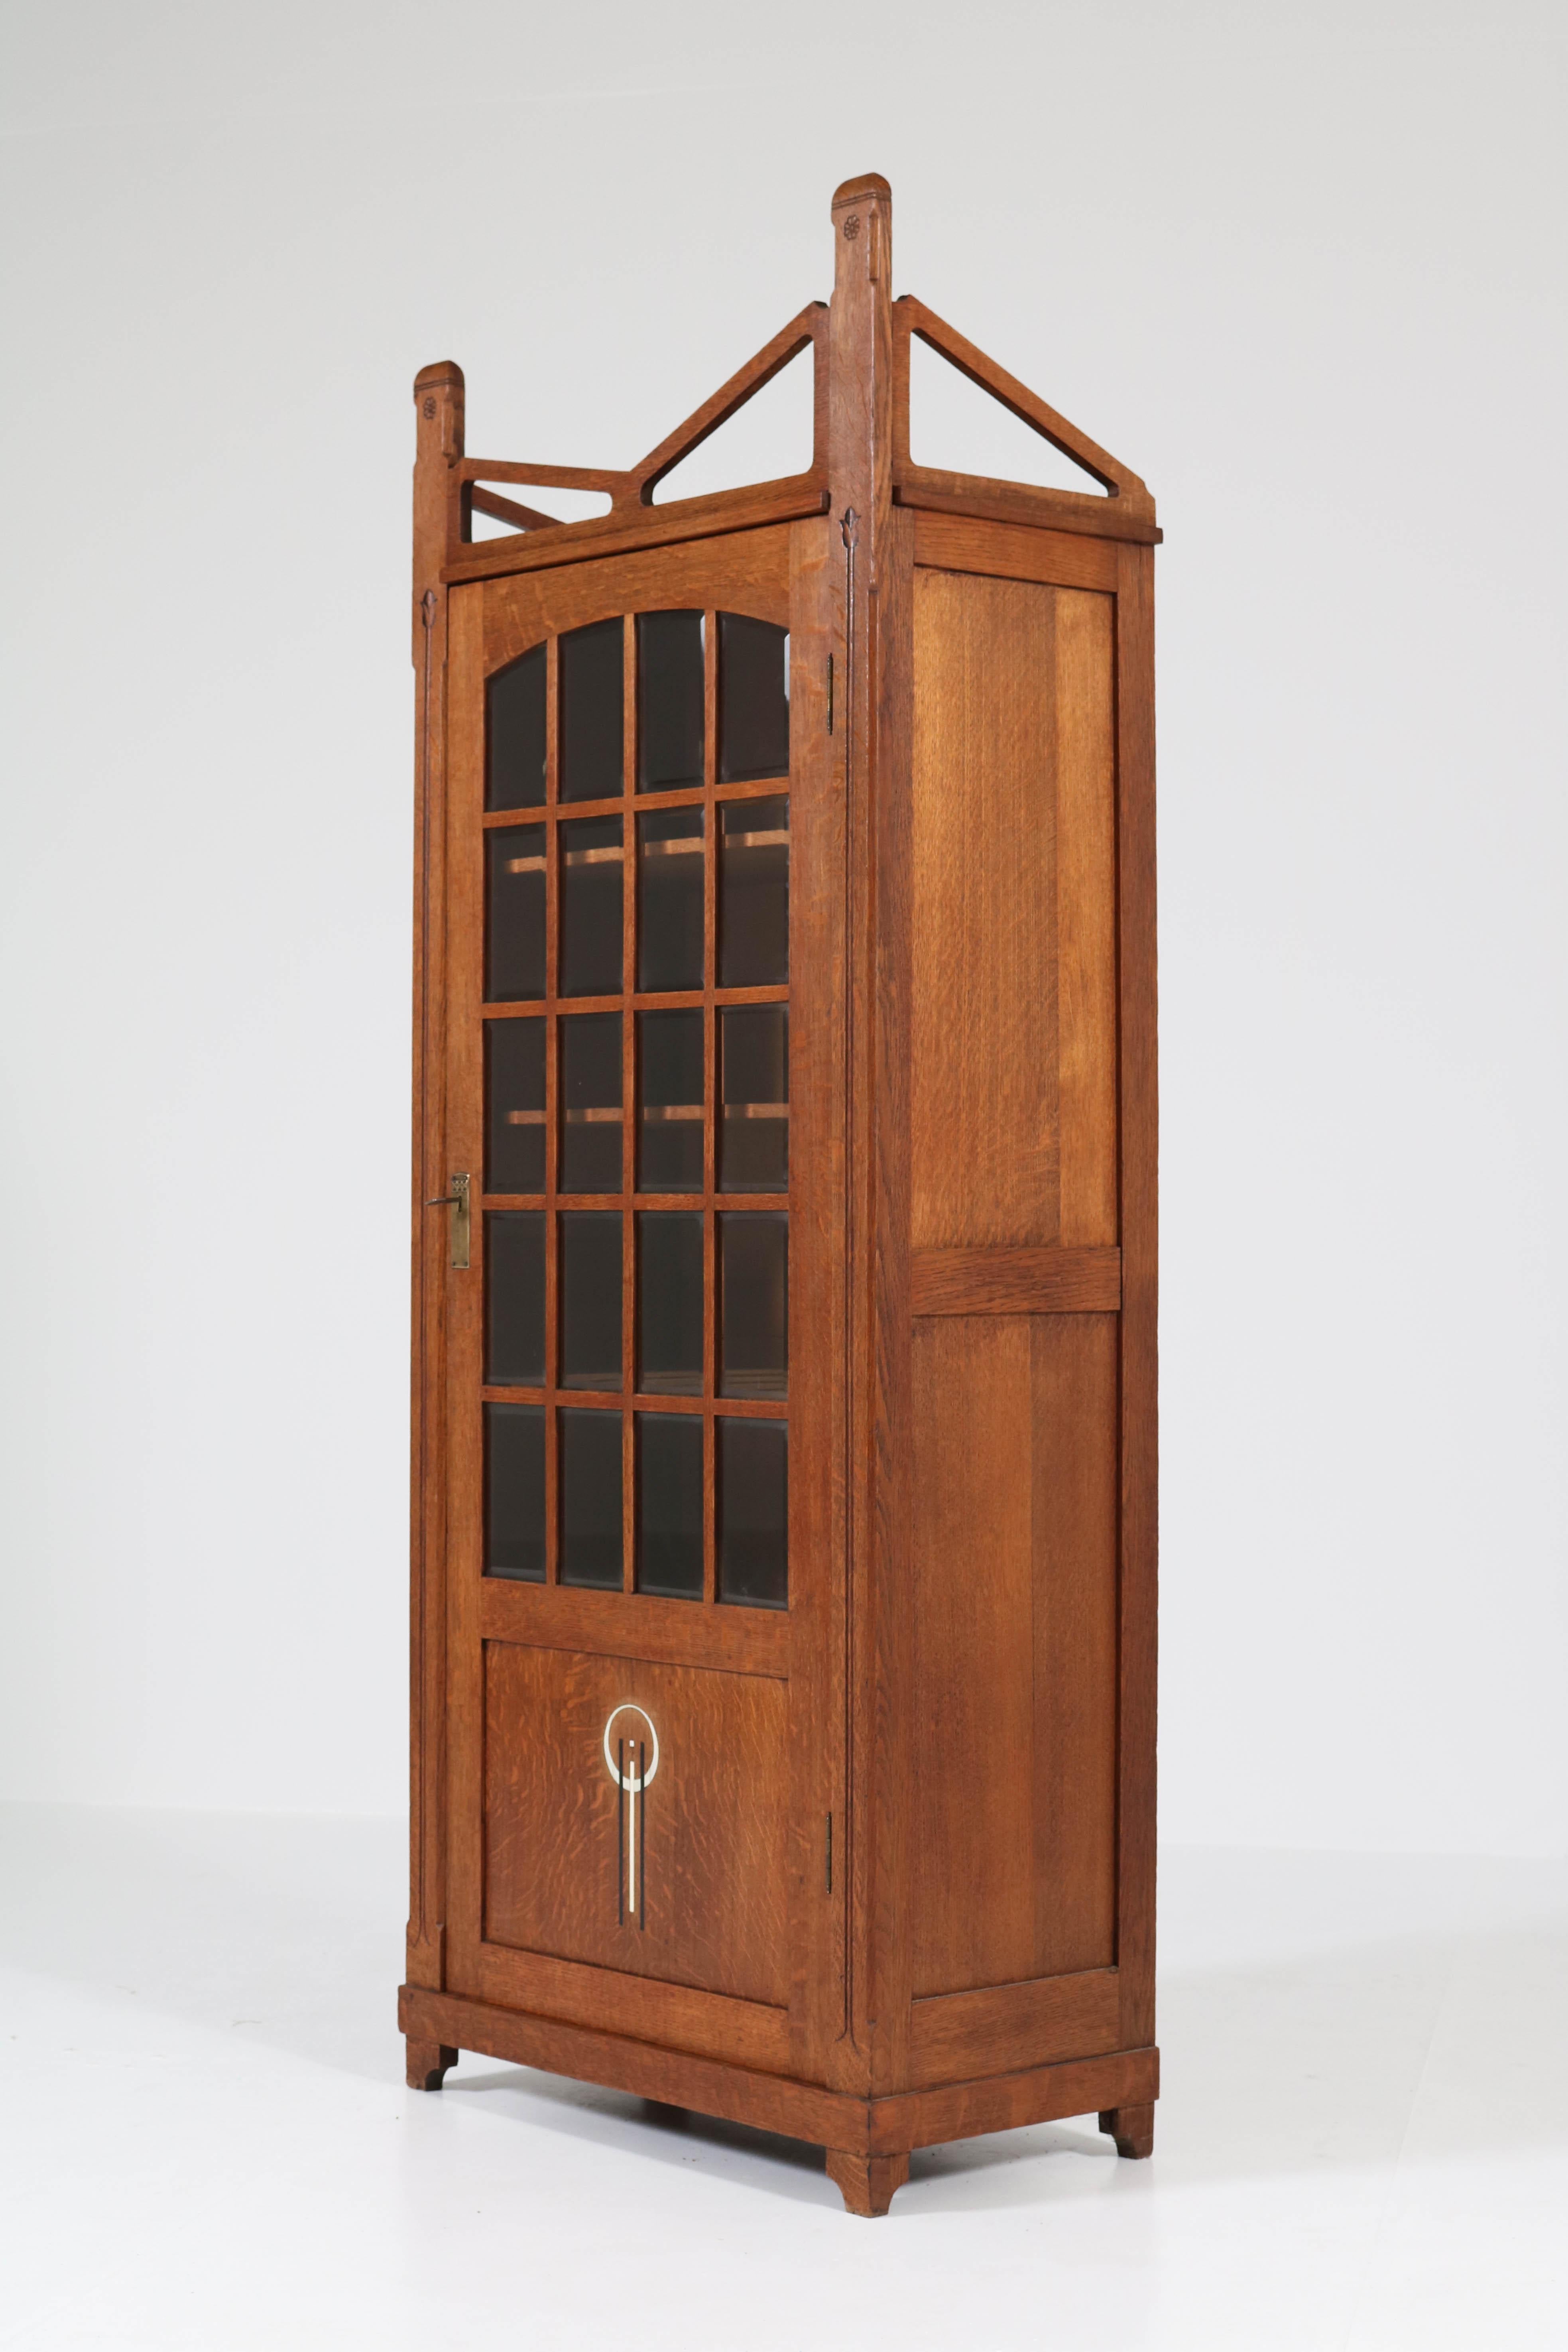 Dutch Oak Art Nouveau Arts & Crafts Bookcase by Prins Culemborg, 1900s (Frühes 20. Jahrhundert)